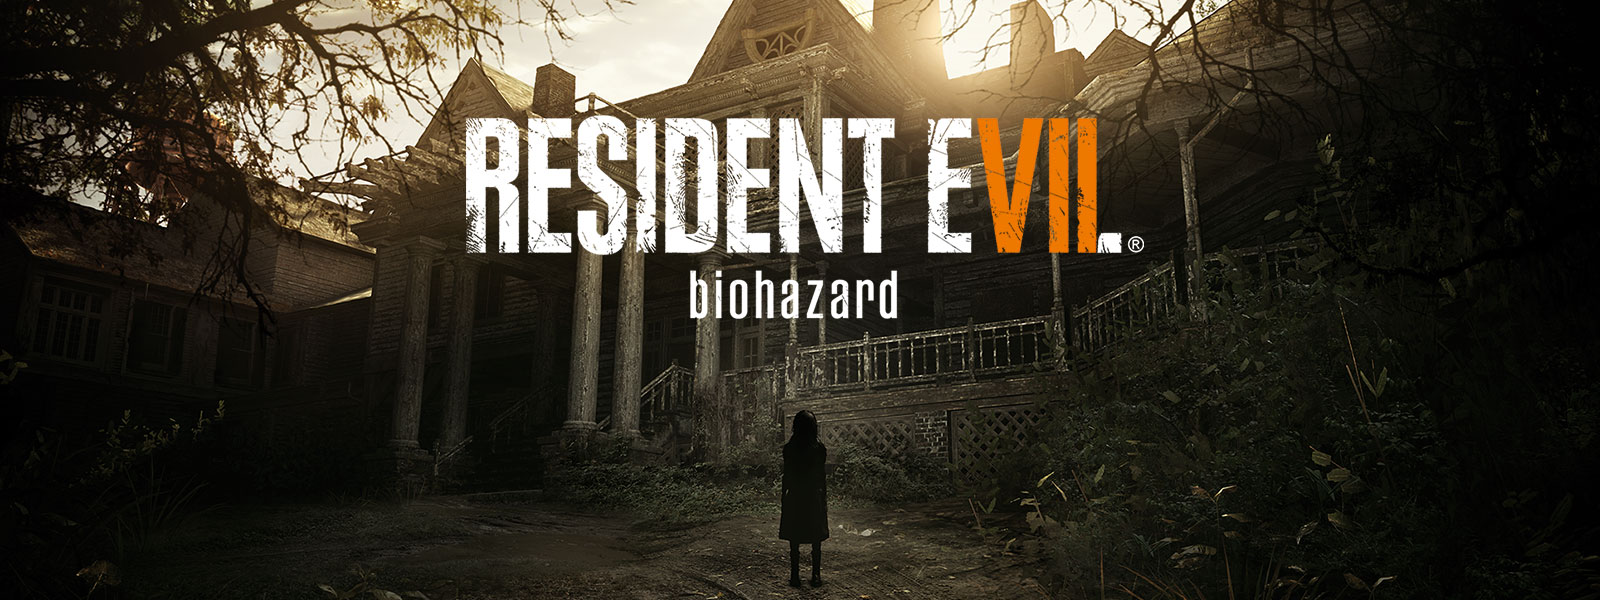 Image de la boîte de Resident Evil 7 Biohazard Gold Edition par-dessus une scène d'une fille effrayante debout devant une maison hantée